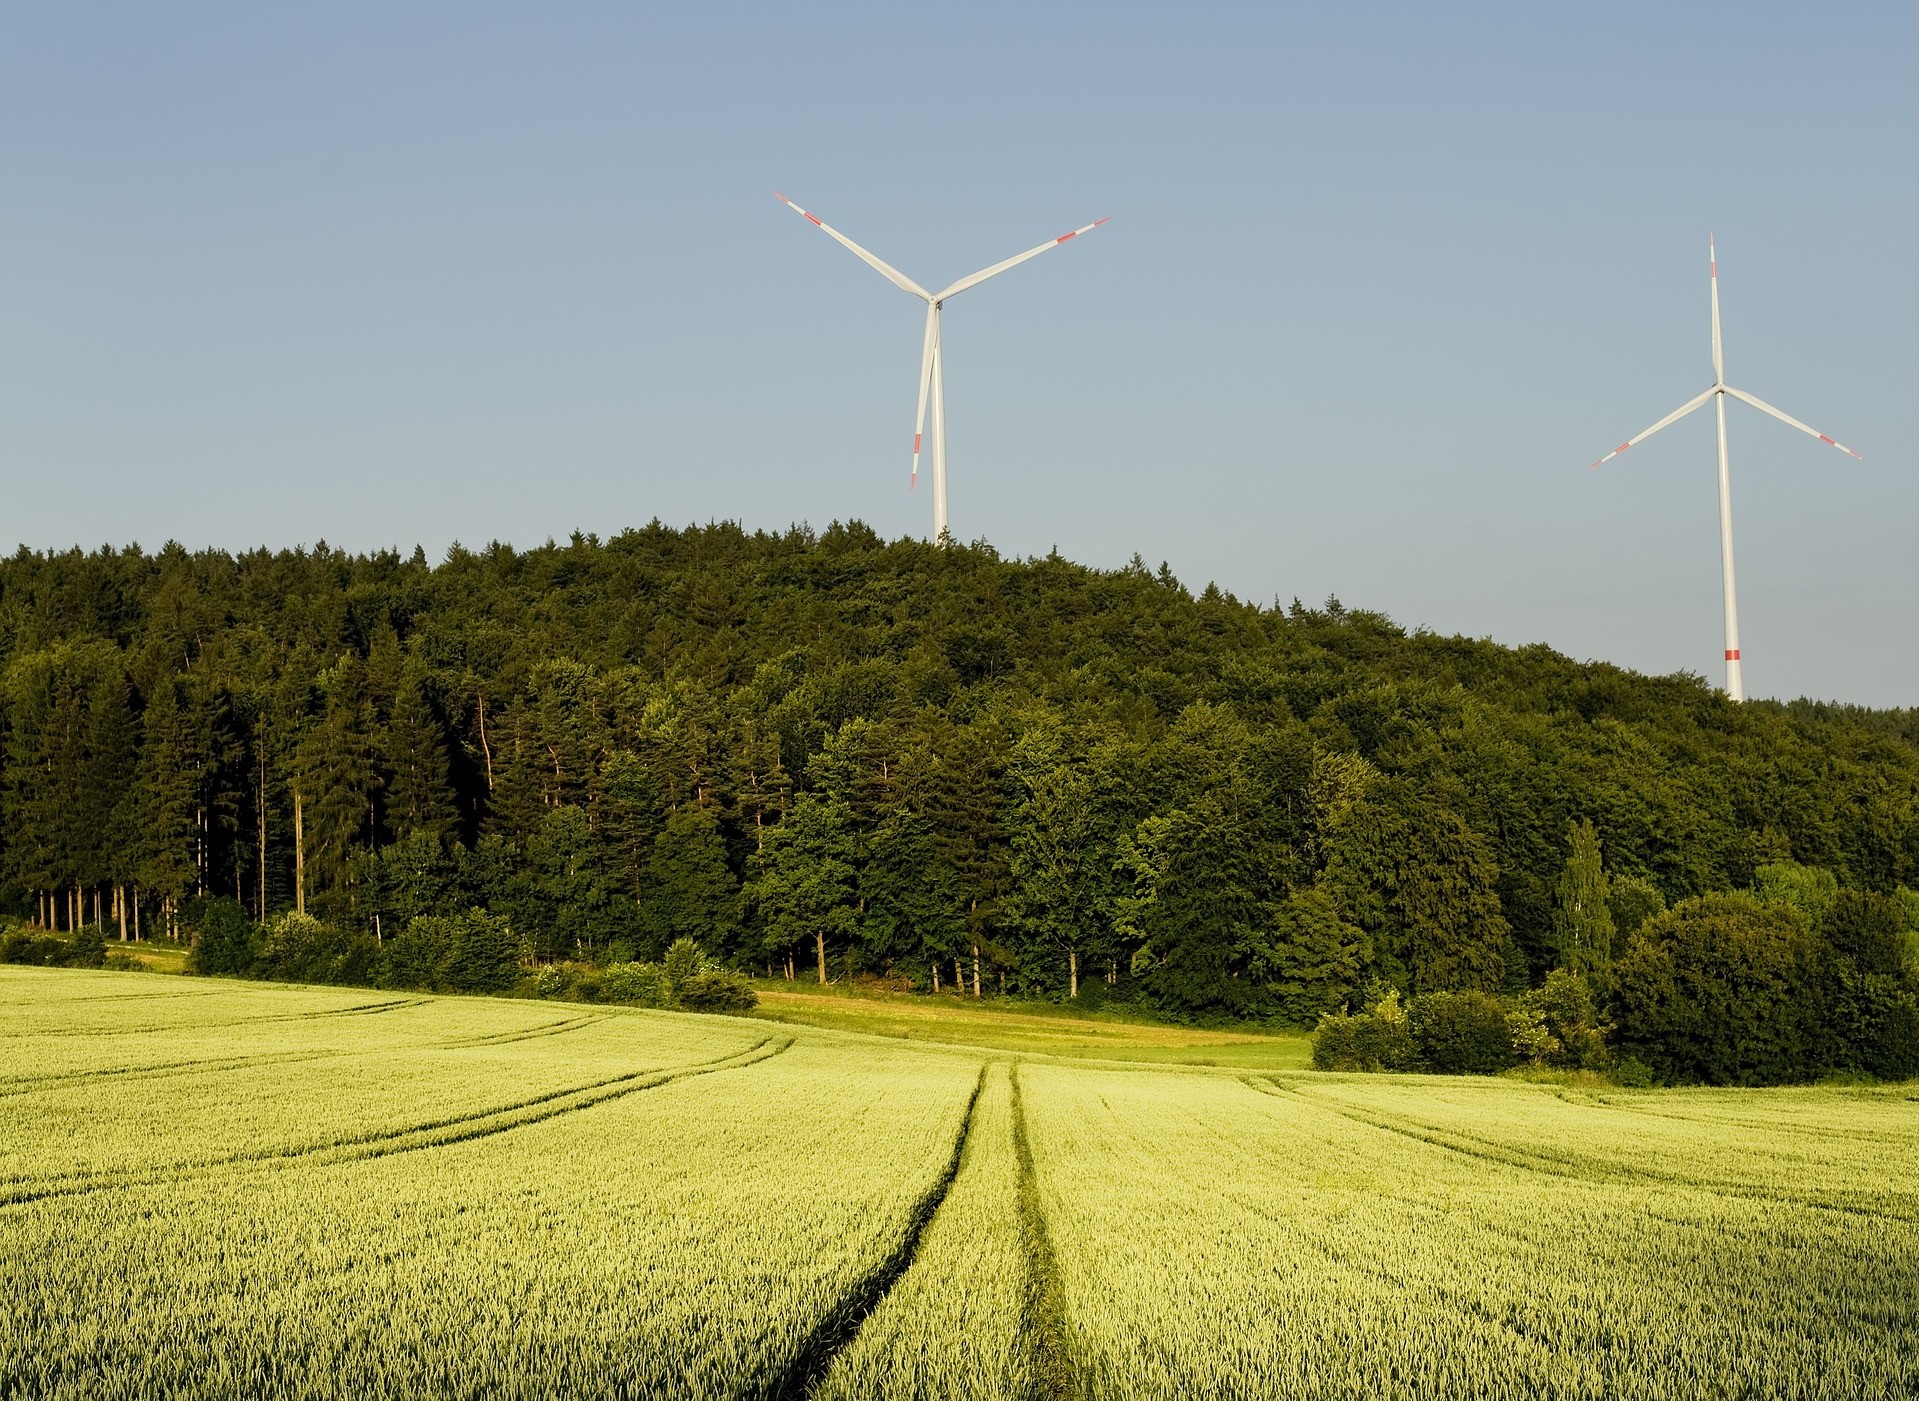 Windenergieanlagen und Landschaft, Bild von andreas160578 auf Pixabay